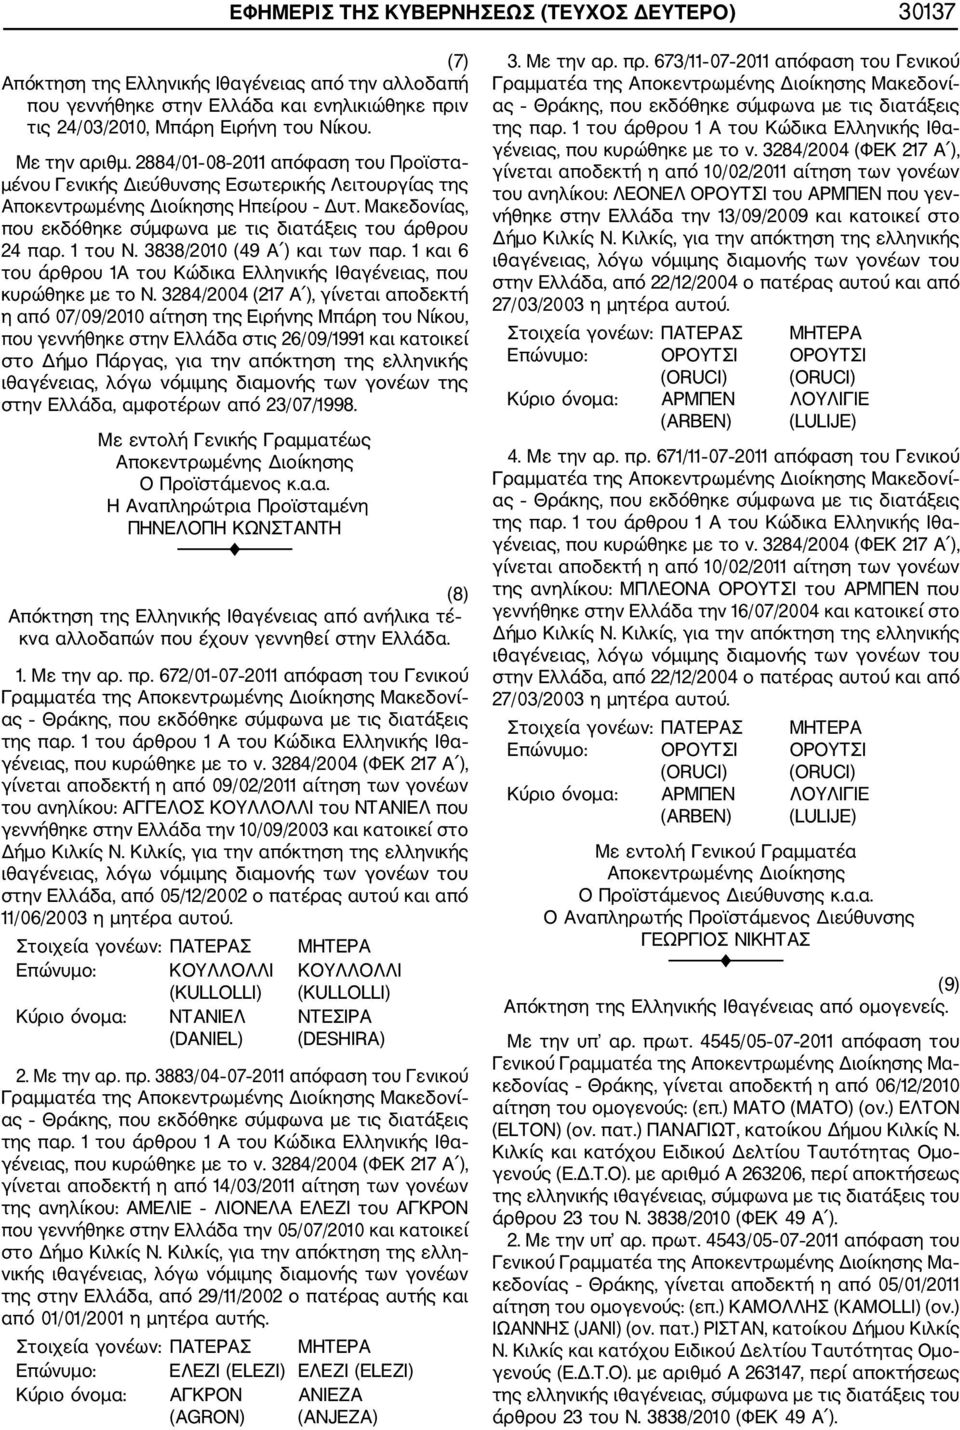 Μακεδονίας, που εκδόθηκε σύμφωνα με τις διατάξεις του άρθρου 24 παρ. 1 του Ν. 3838/2010 (49 Α ) και των παρ. 1 και 6 του άρθρου 1Α του Κώδικα Ελληνικής Ιθαγένειας, που κυρώθηκε με το Ν.